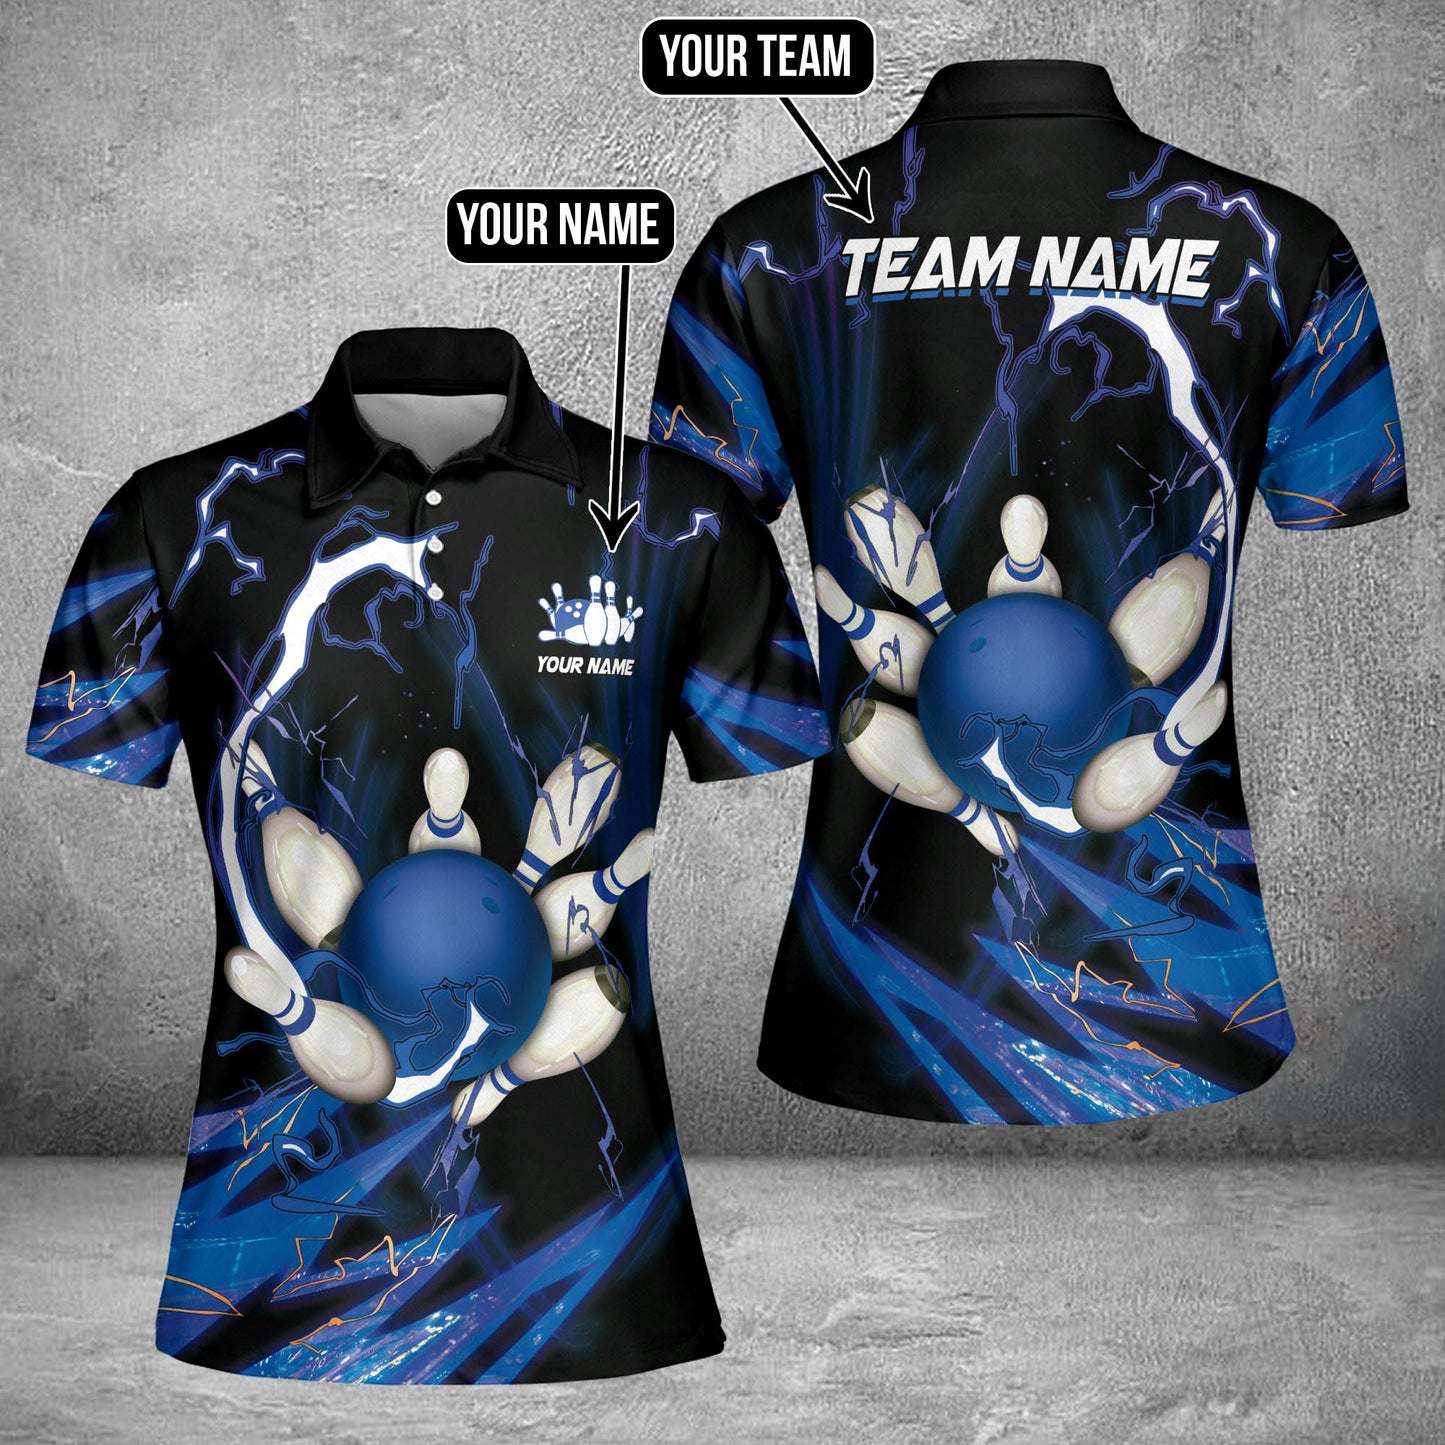 Custom Flame Bowling Polo Team Shirts BO0096